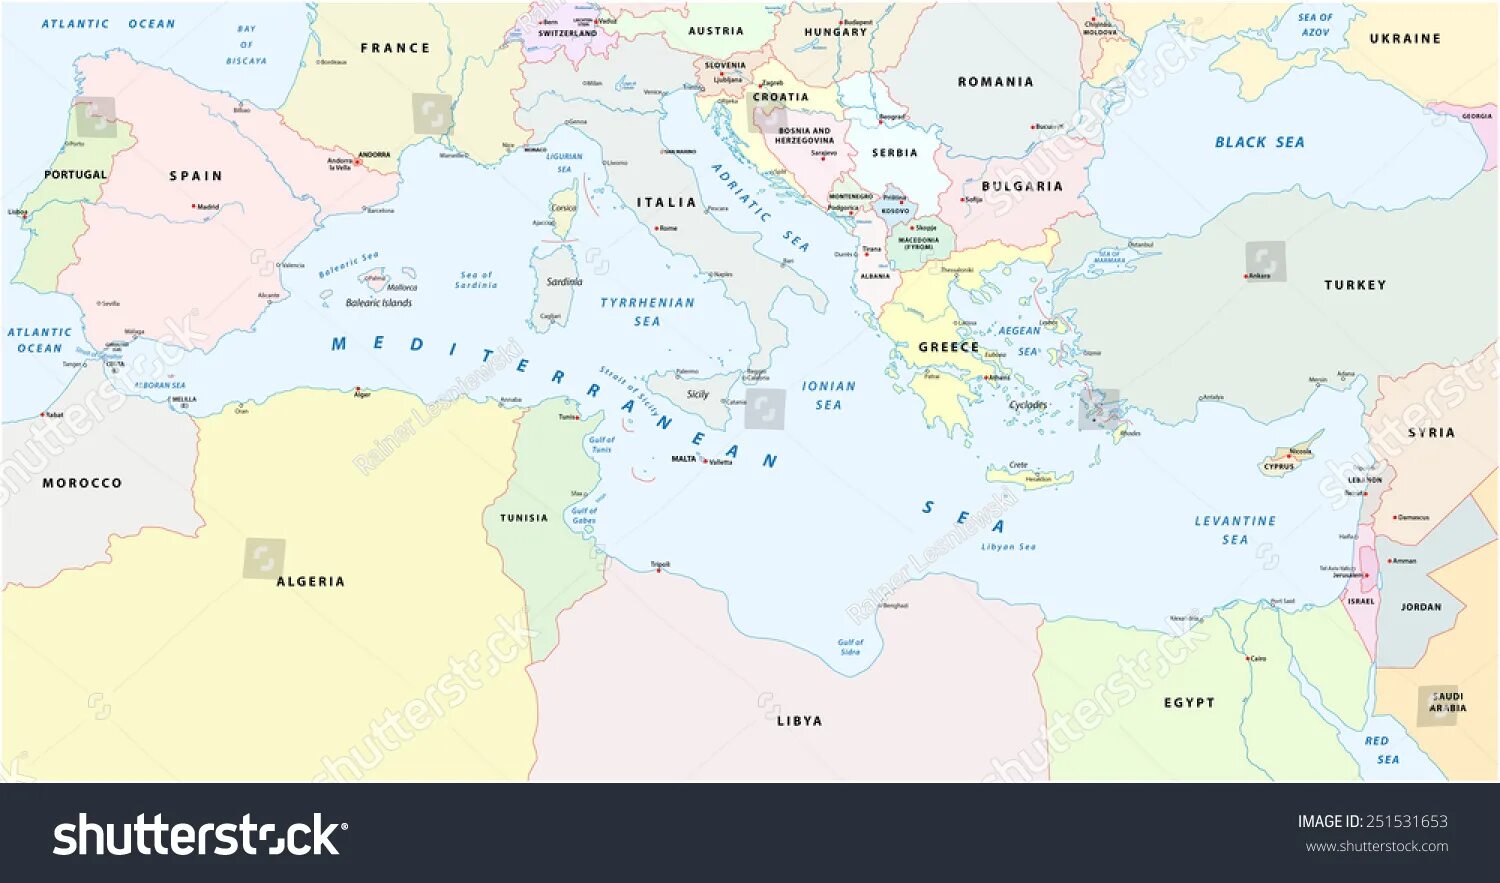 Страны вокруг черного. Карта вокруг Средиземного моря. Карта Средиземного моря со странами. Карта государств Средиземного моря. Политическая карта Средиземноморья.